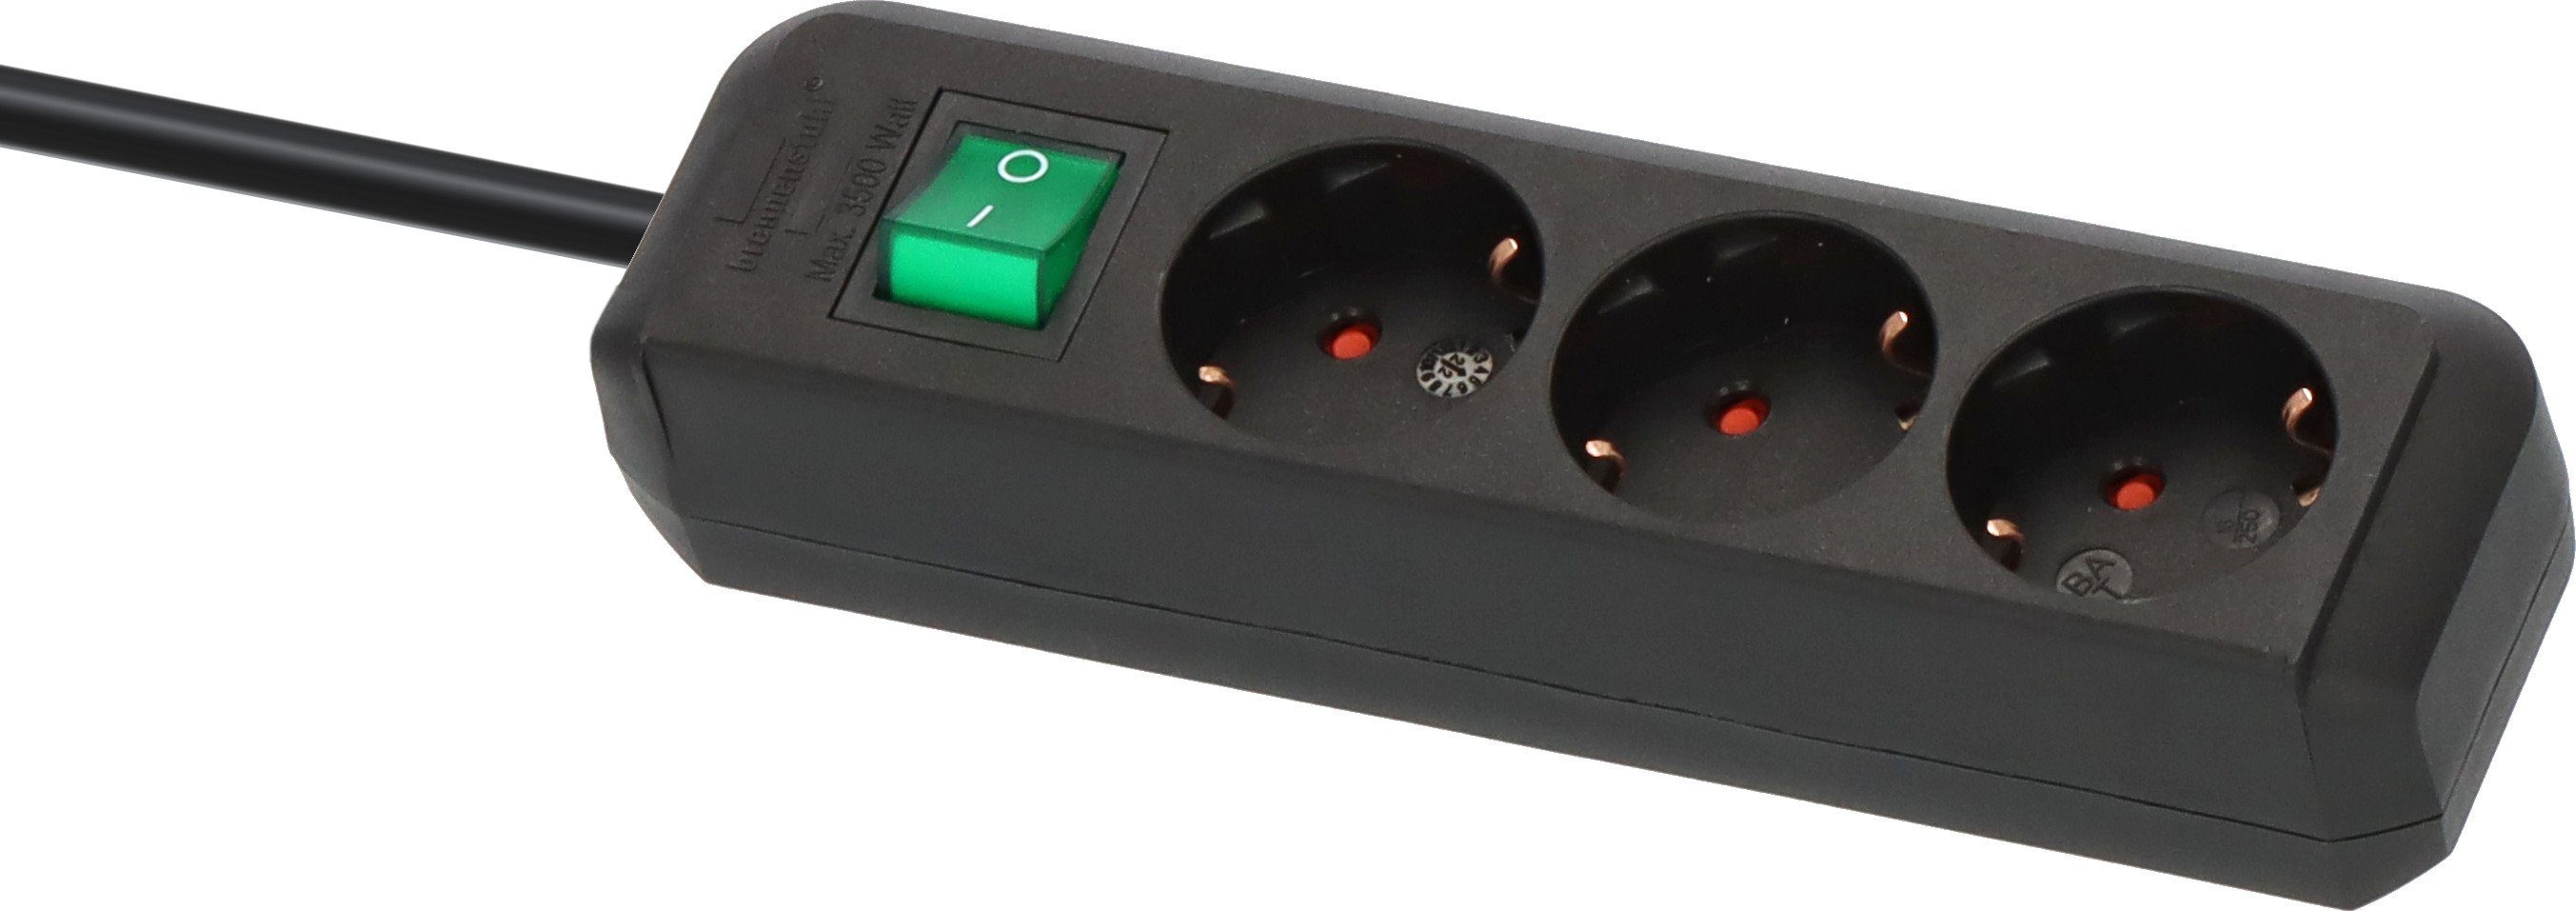 Brennenstuhl Eco-Line Steckdosenleiste 3-fach (Kabellänge m), 5 und erhöhtem Berührungsschutz mit Schalter